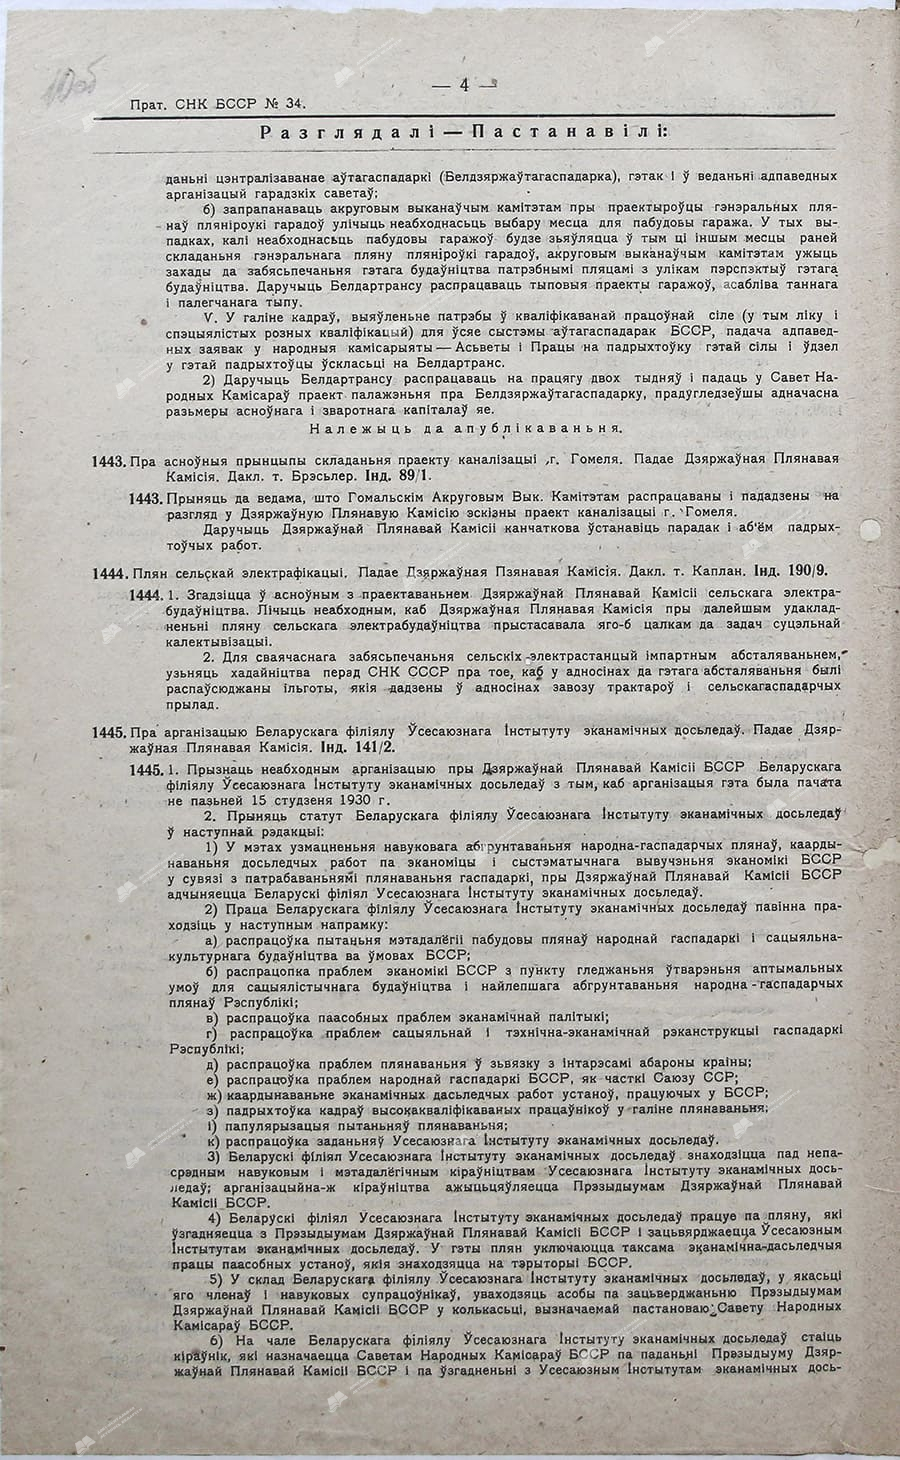 Пратакол №34 пасяджэньня Савету Народных Камісараў Беларускае ССР за 12 студзеня 1930 г.-с. 1